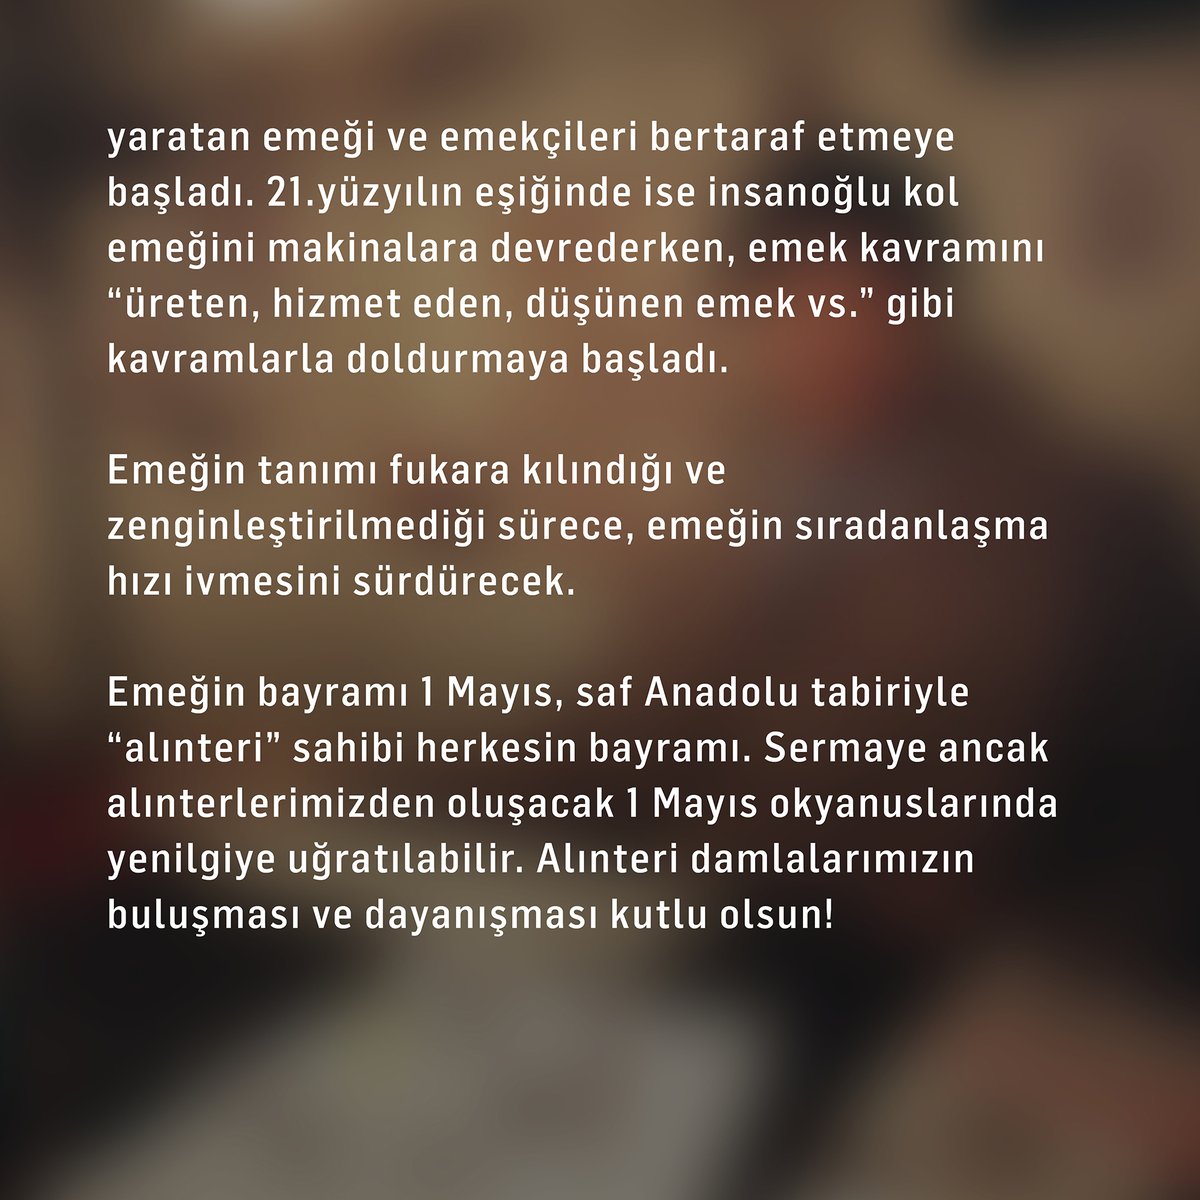 Hrant Dink’in 1 Mayıs 1998 tarihli “Alınterinin Bayramı” yazısı